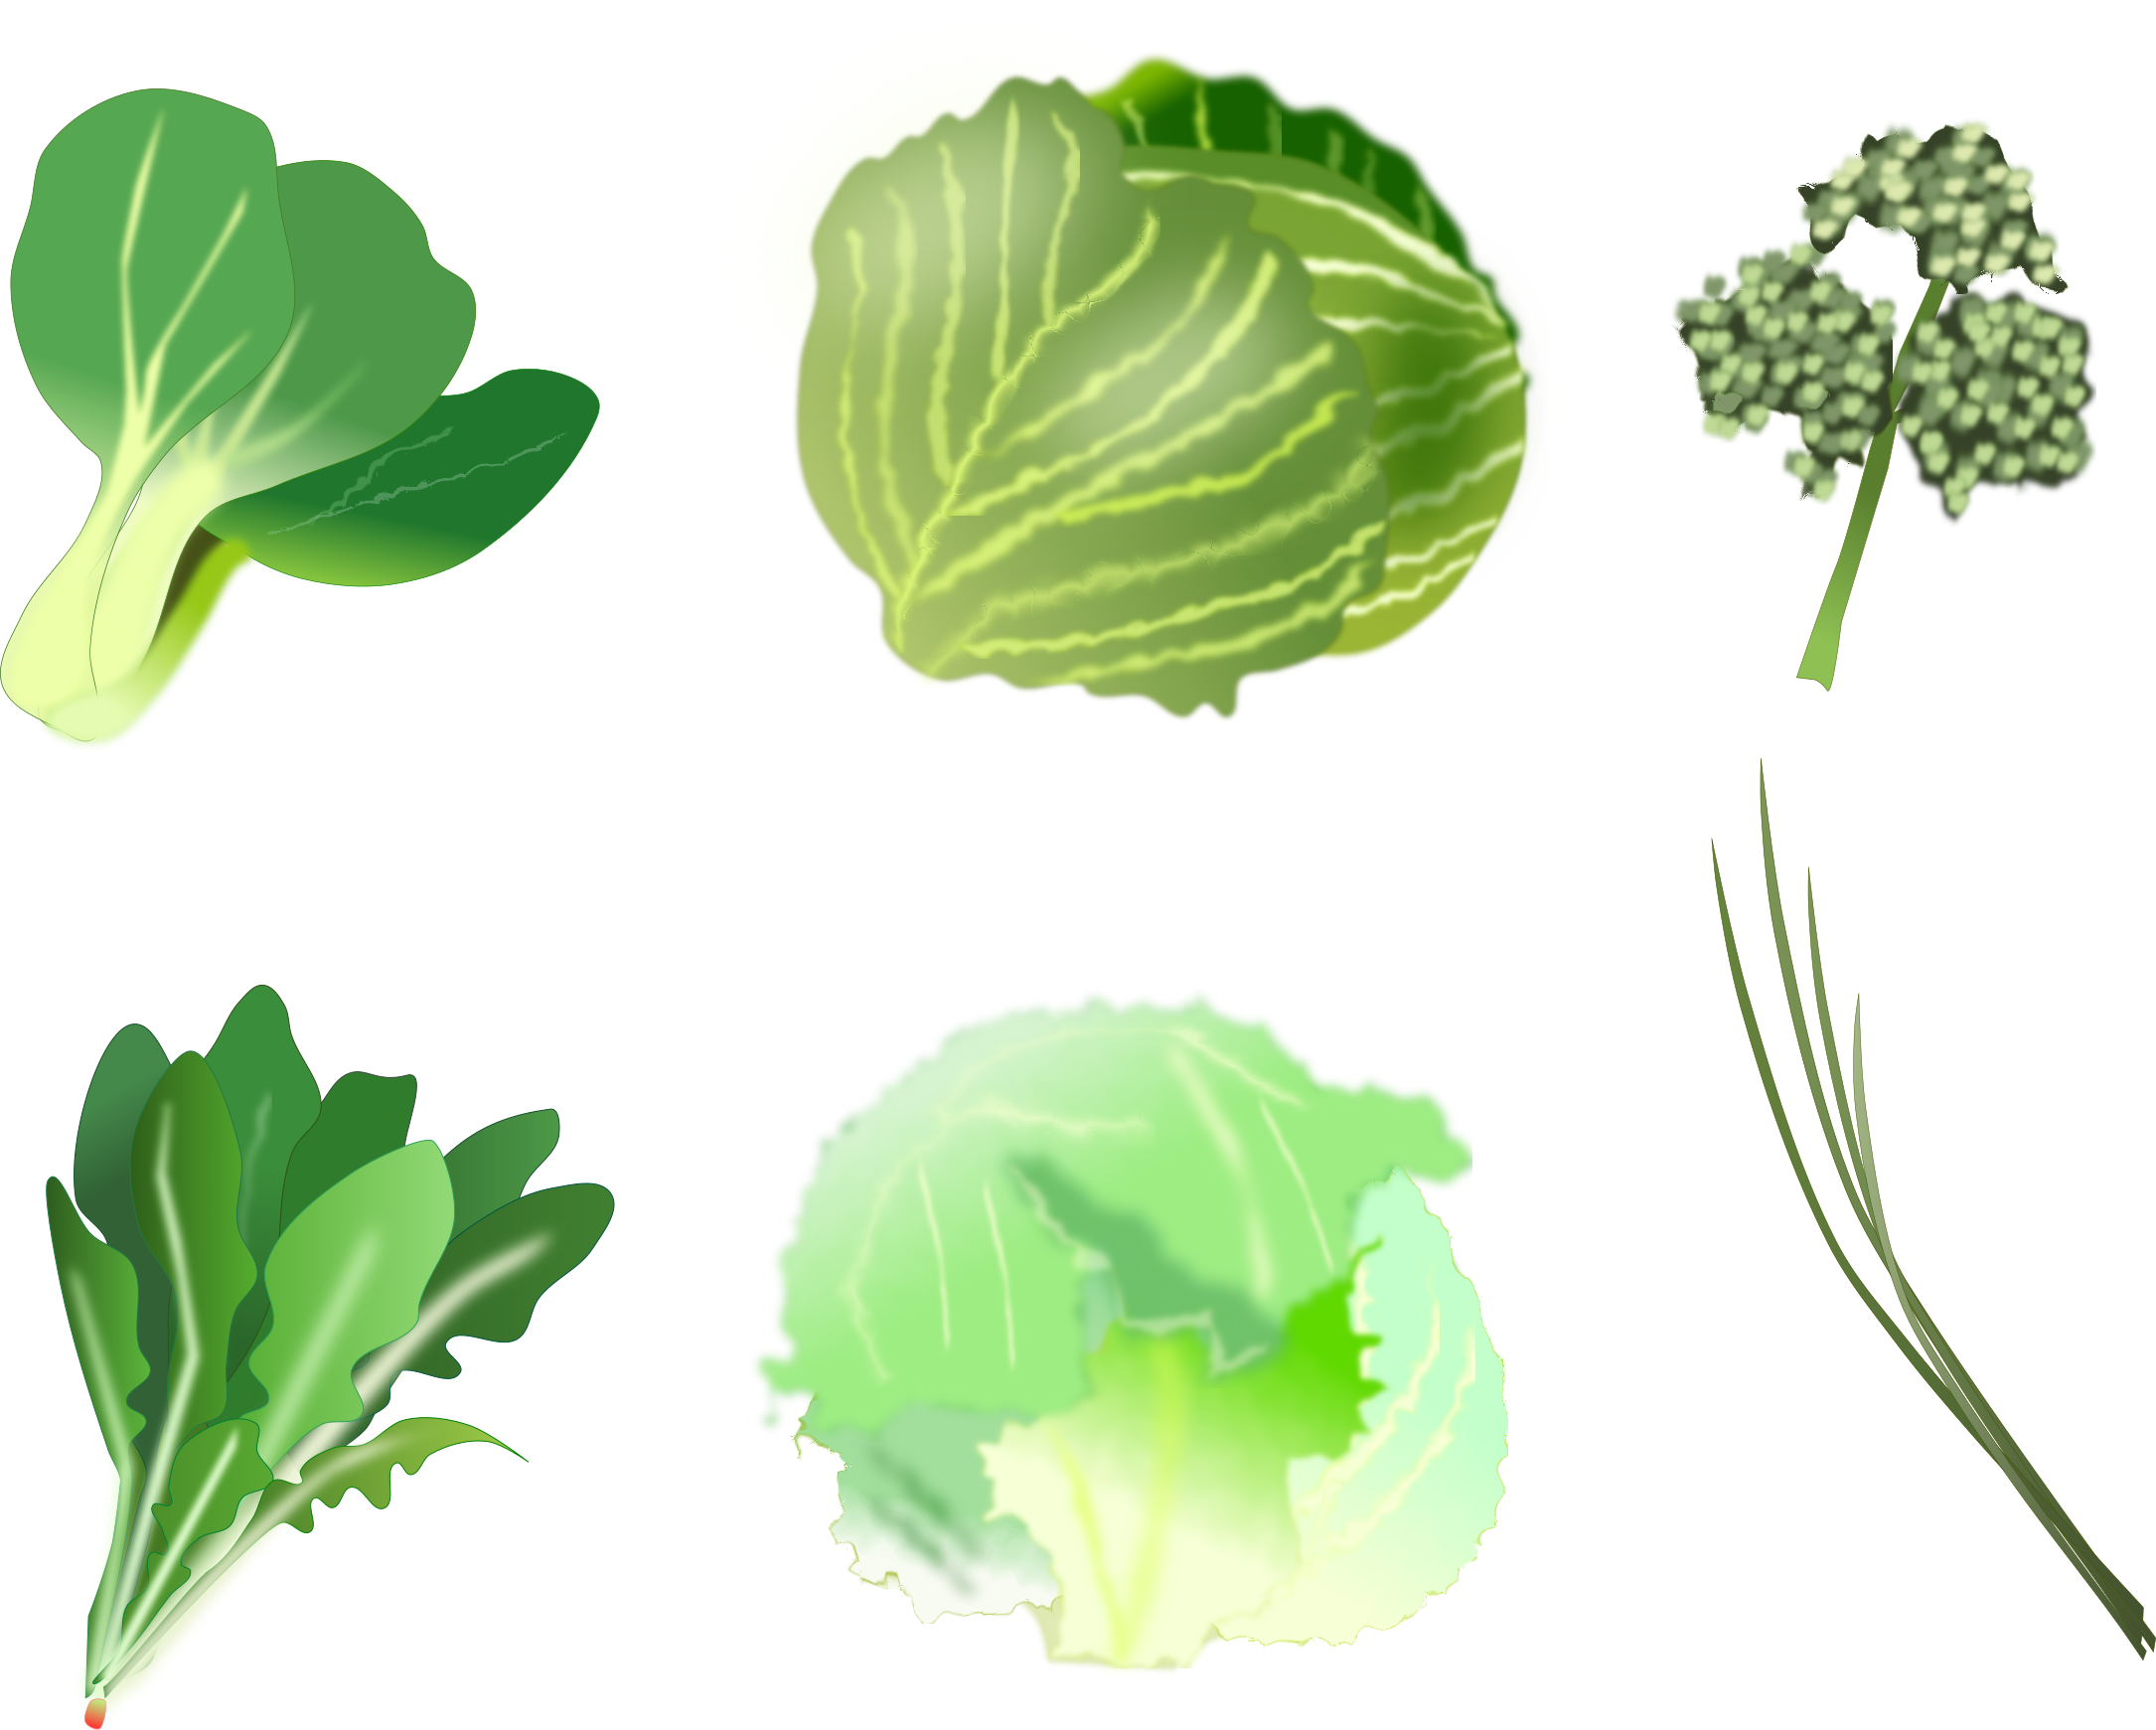 Leafy stem vegetables